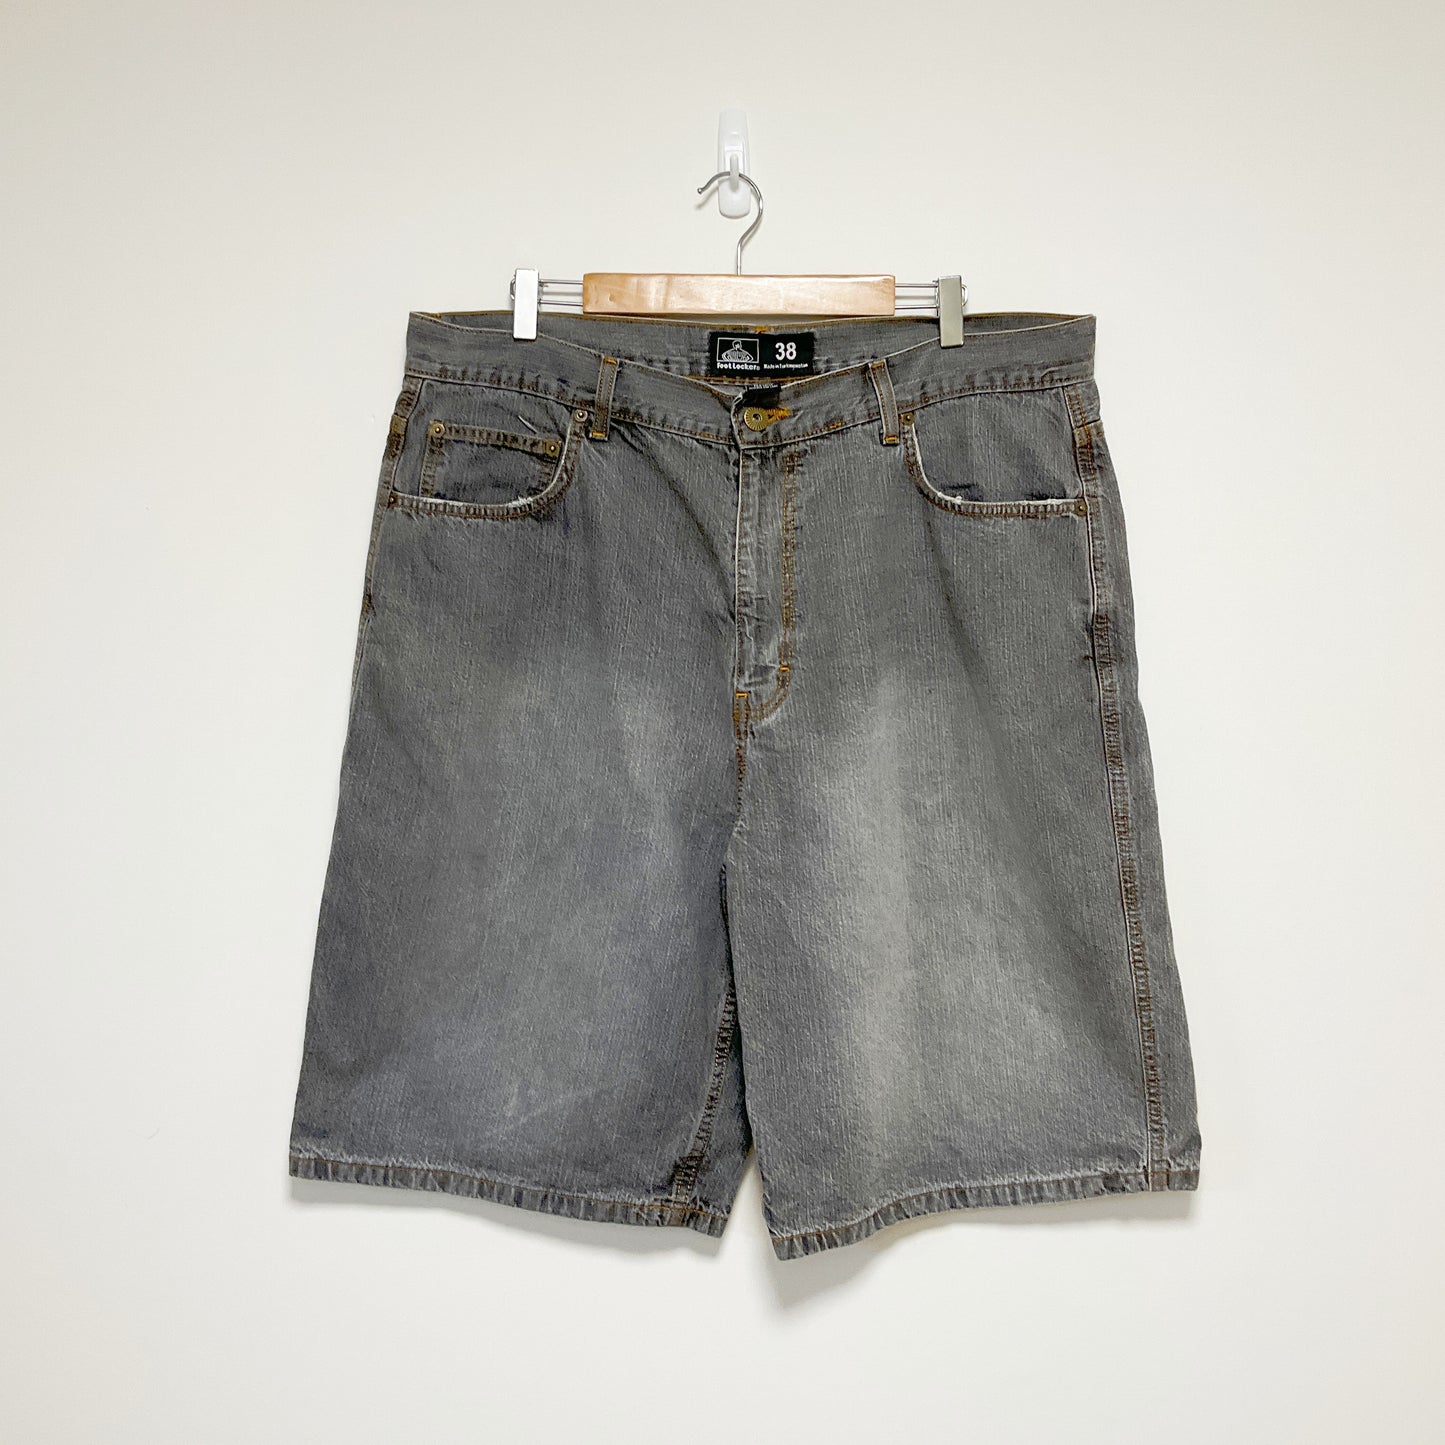 Foot Locker - Dark Grey Short Jeans for Men